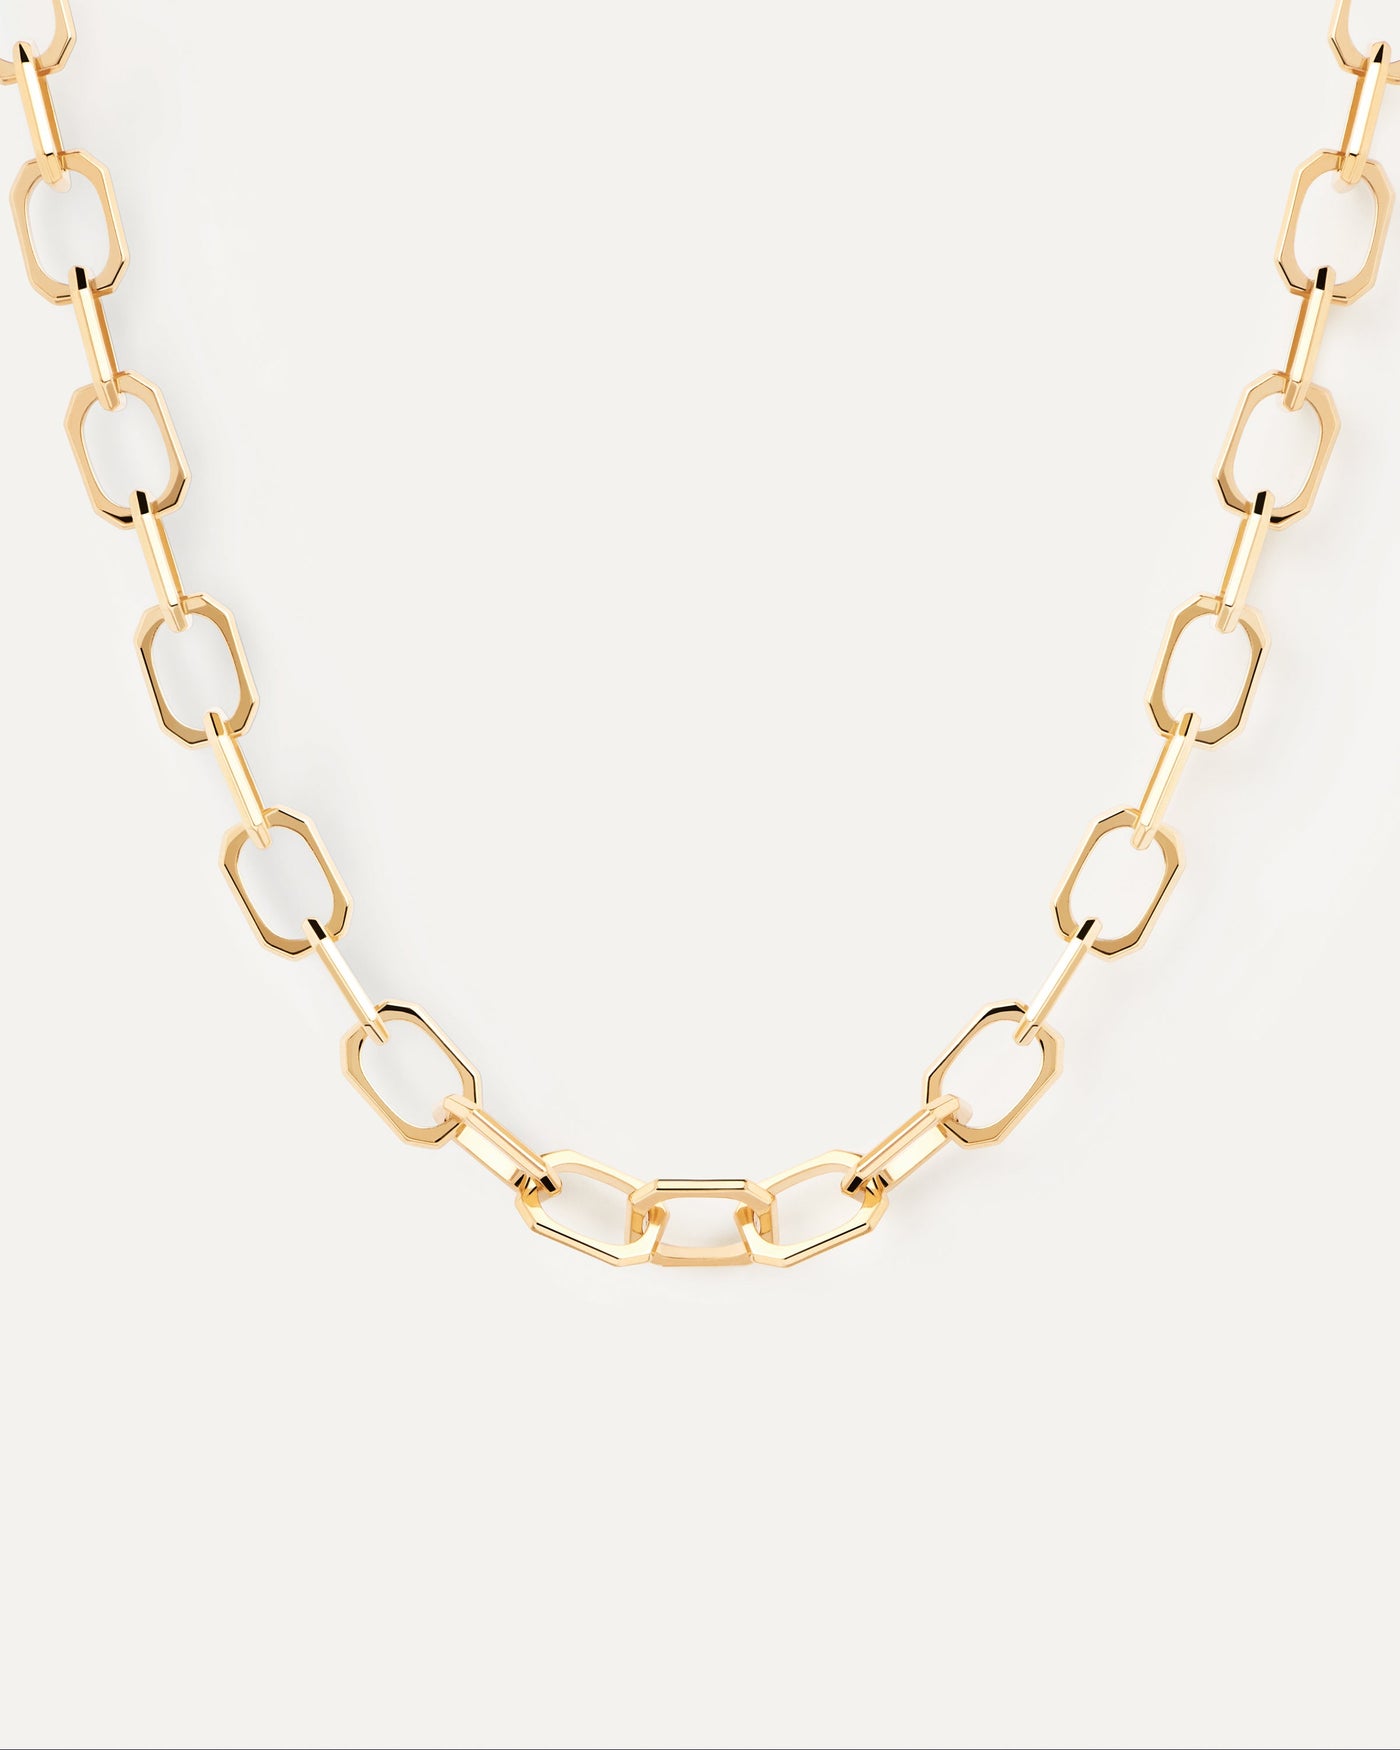 Small Signature Halskette. Kabelketten -Halskette mit oktogonalen Glieren in 18 Karat Goldbeschichtung. Erhalten Sie die neuesten Produkte von PDPAOLA. Geben Sie Ihre Bestellung sicher auf und erhalten Sie diesen Bestseller.